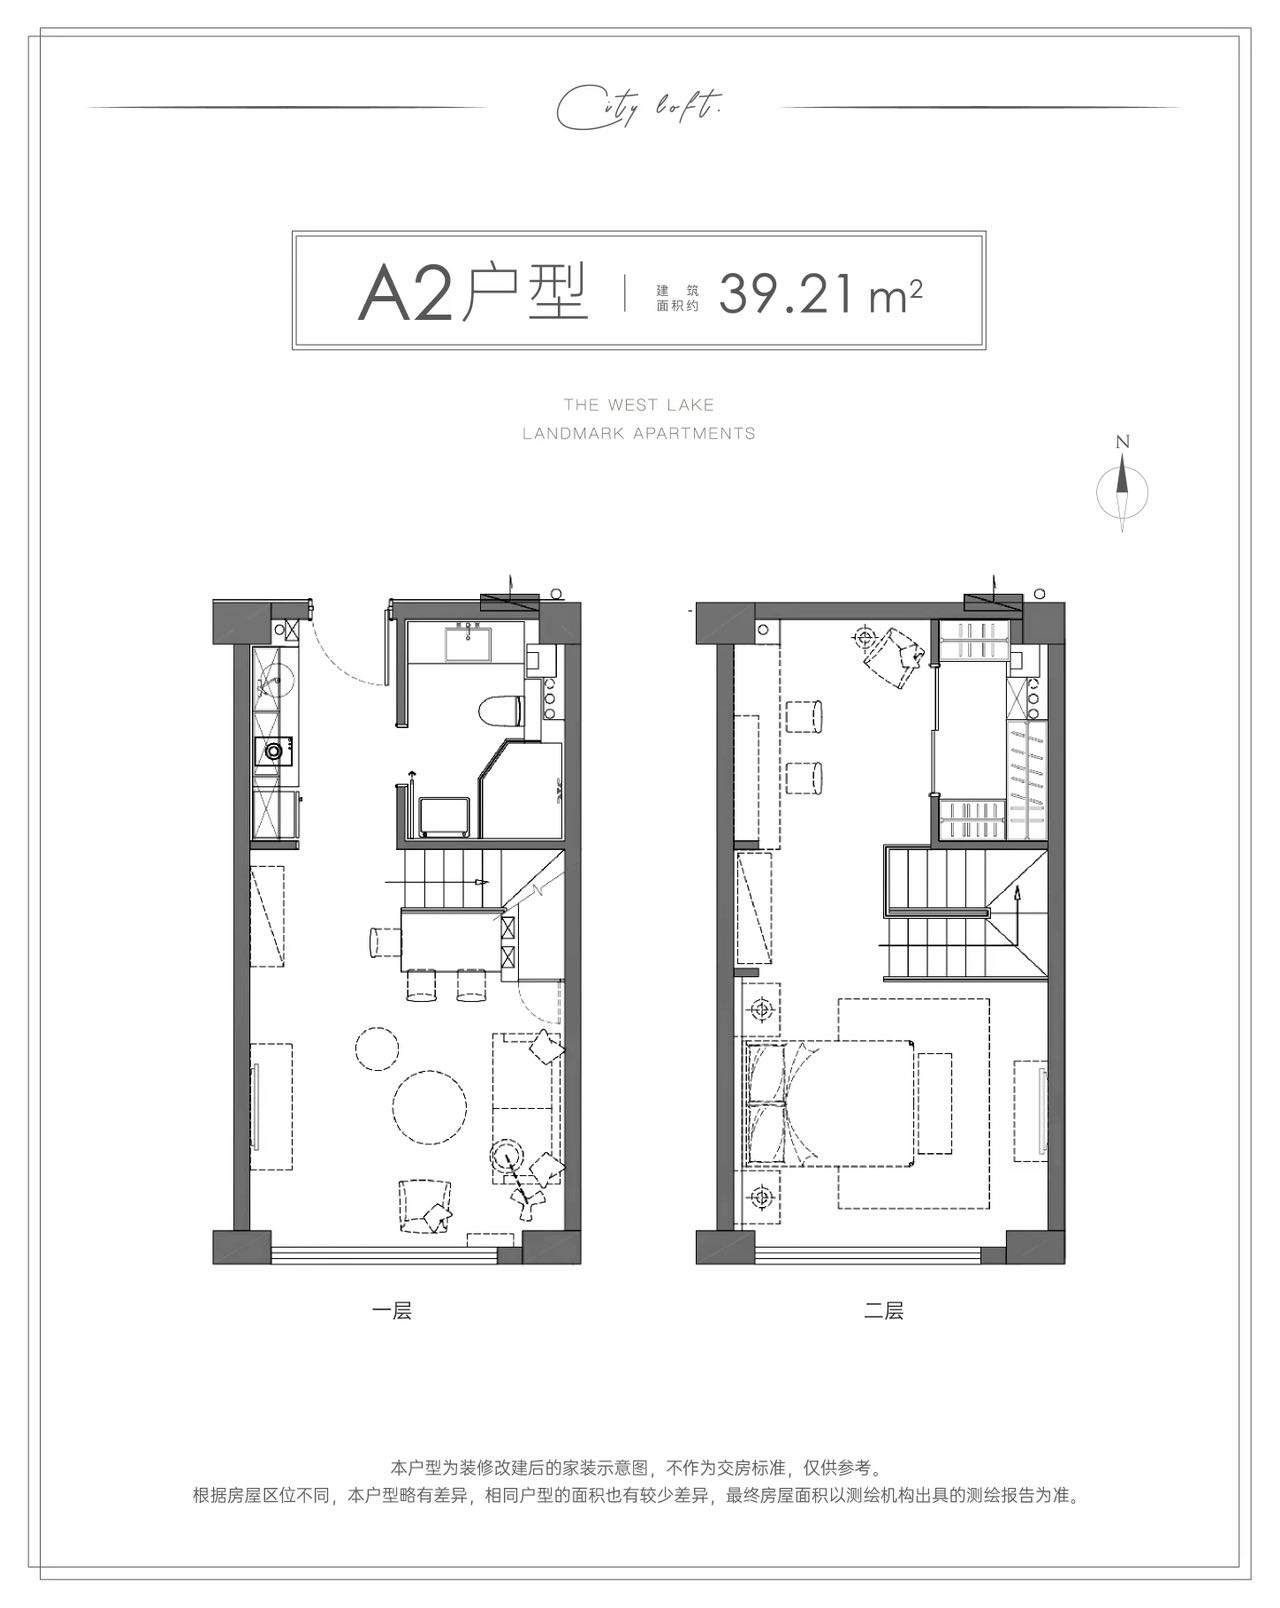 华海园三期公寓户型,A2  LOFT